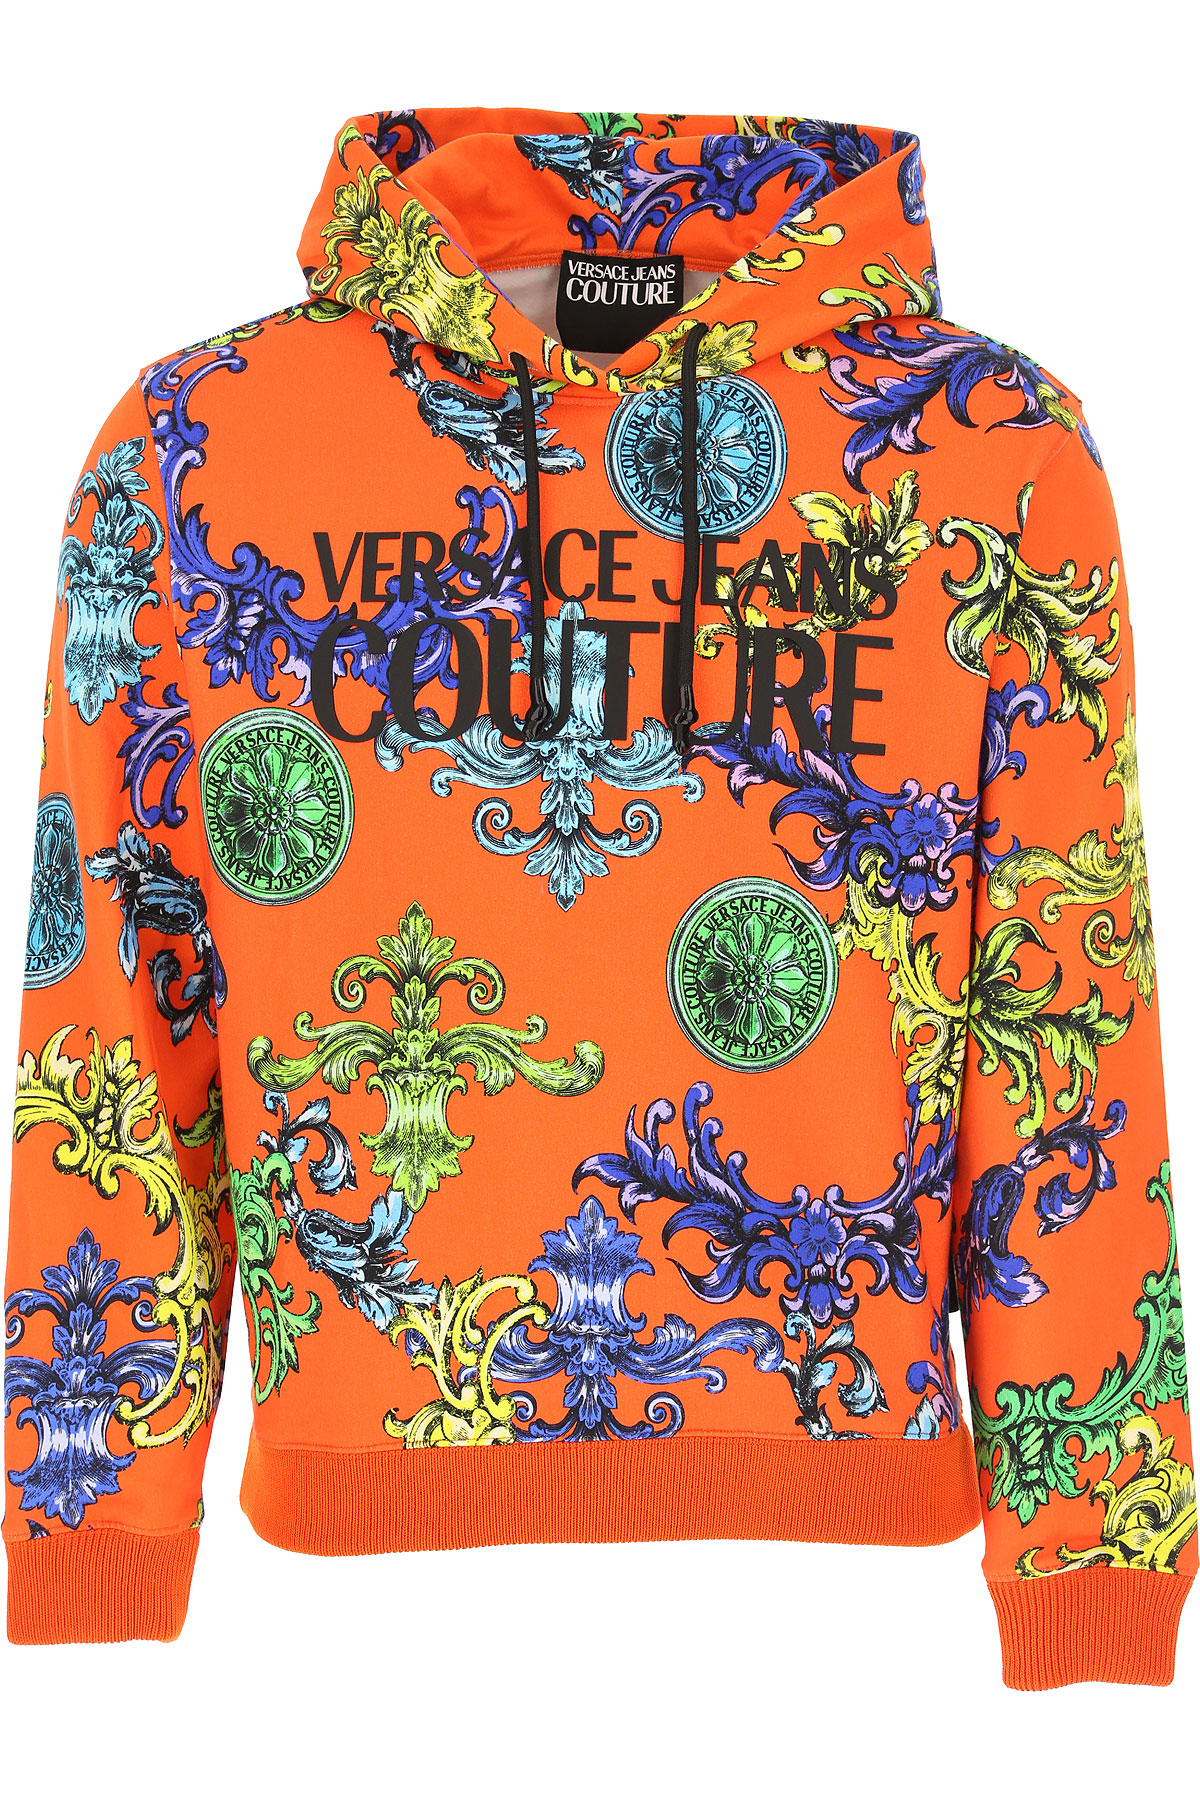 Versace Jeans Couture Sweatshirt für Herren, Kapuzenpulli, Hoodie, Sweats Günstig im Sale, Leuchtendes Chinesisches Rot, Baumwolle, 2017, L S